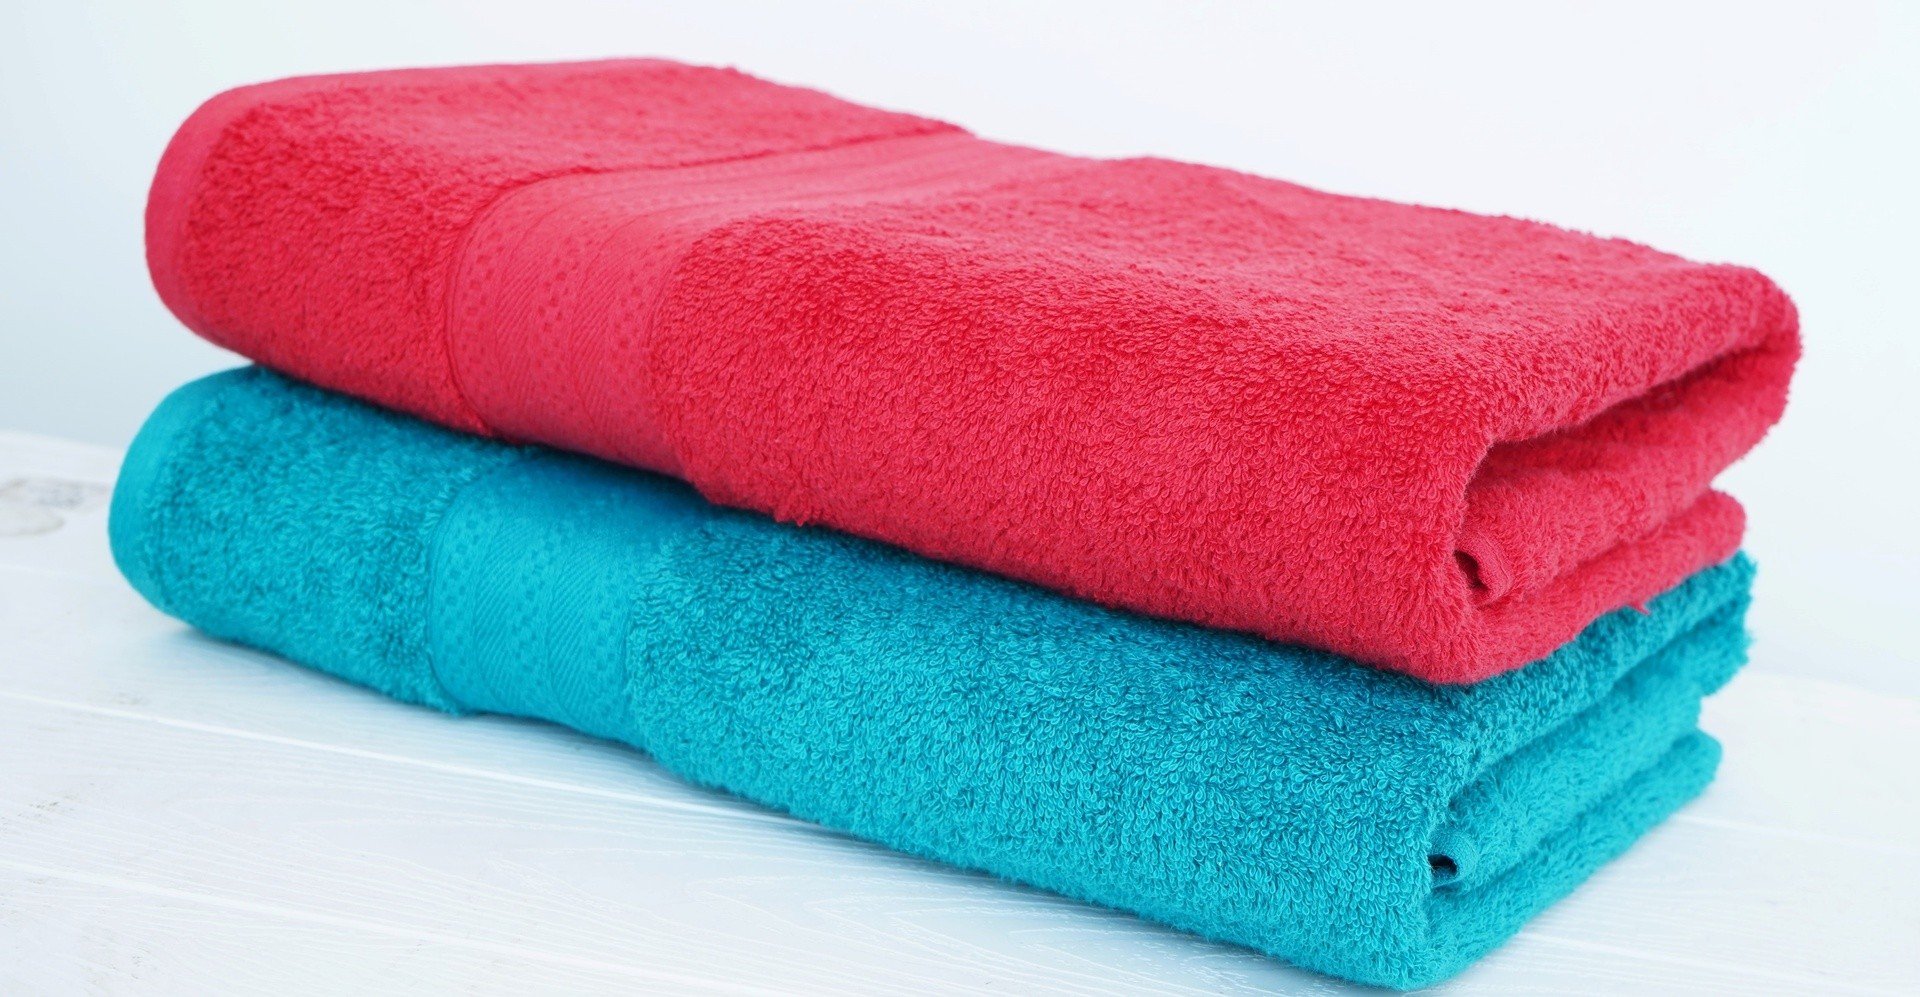 Jak prać ręczniki, żeby były miękkie i miłe w dotyku? Polecamy sprawdzone  triki na ręczniki puszyste jak w SPA | RegioDom